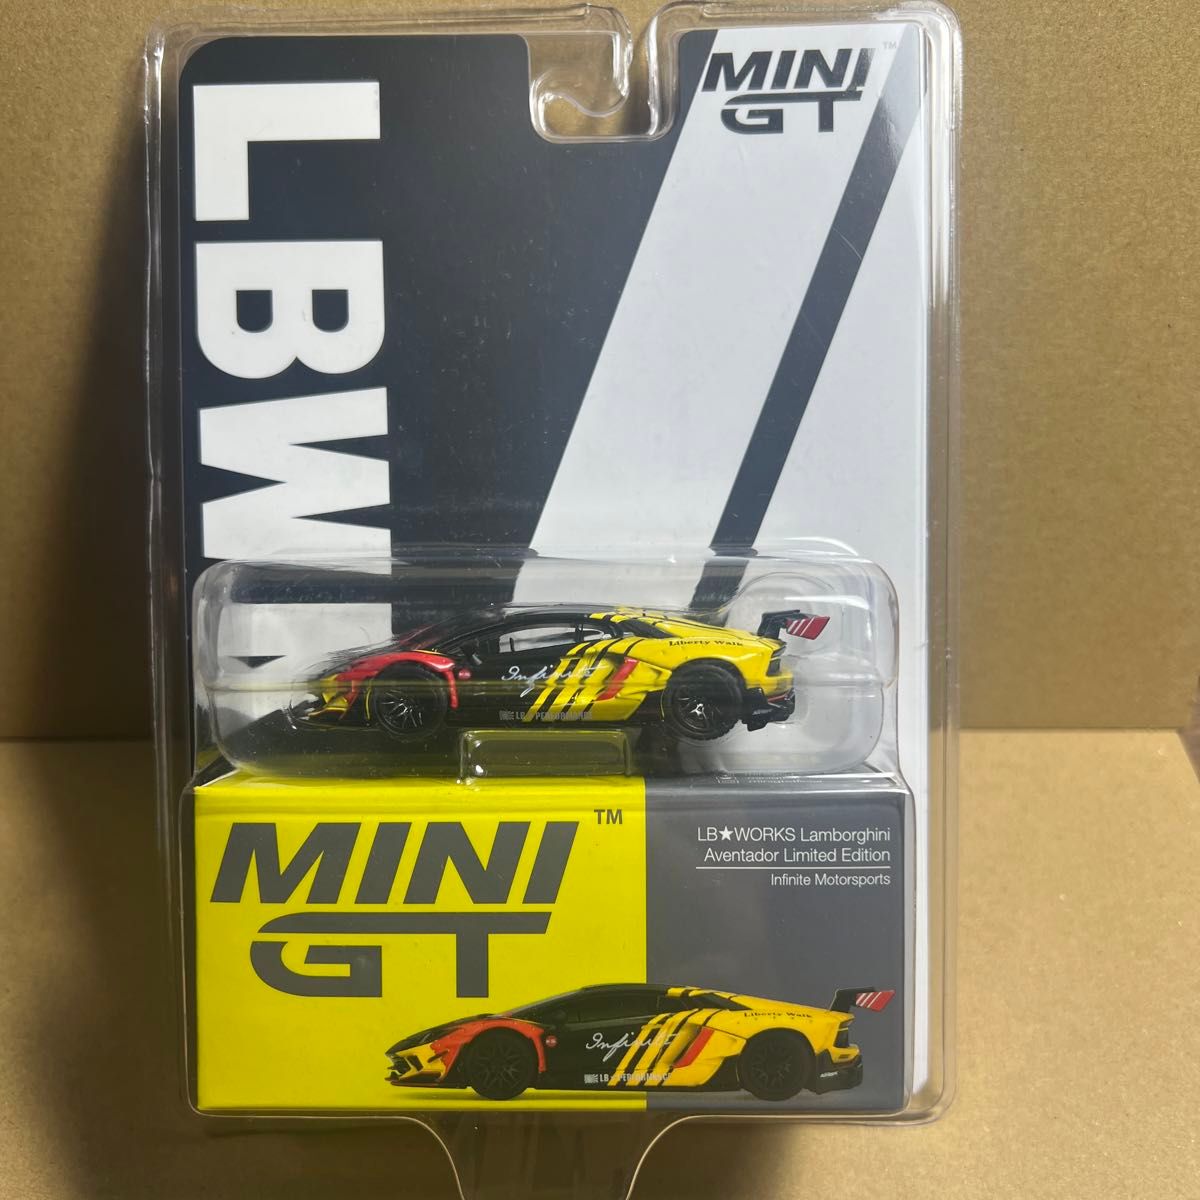 MINI GT LB WORKS ランボルギーニ アヴェンタドール リミテッドエディション インフィニティモータースポーツ